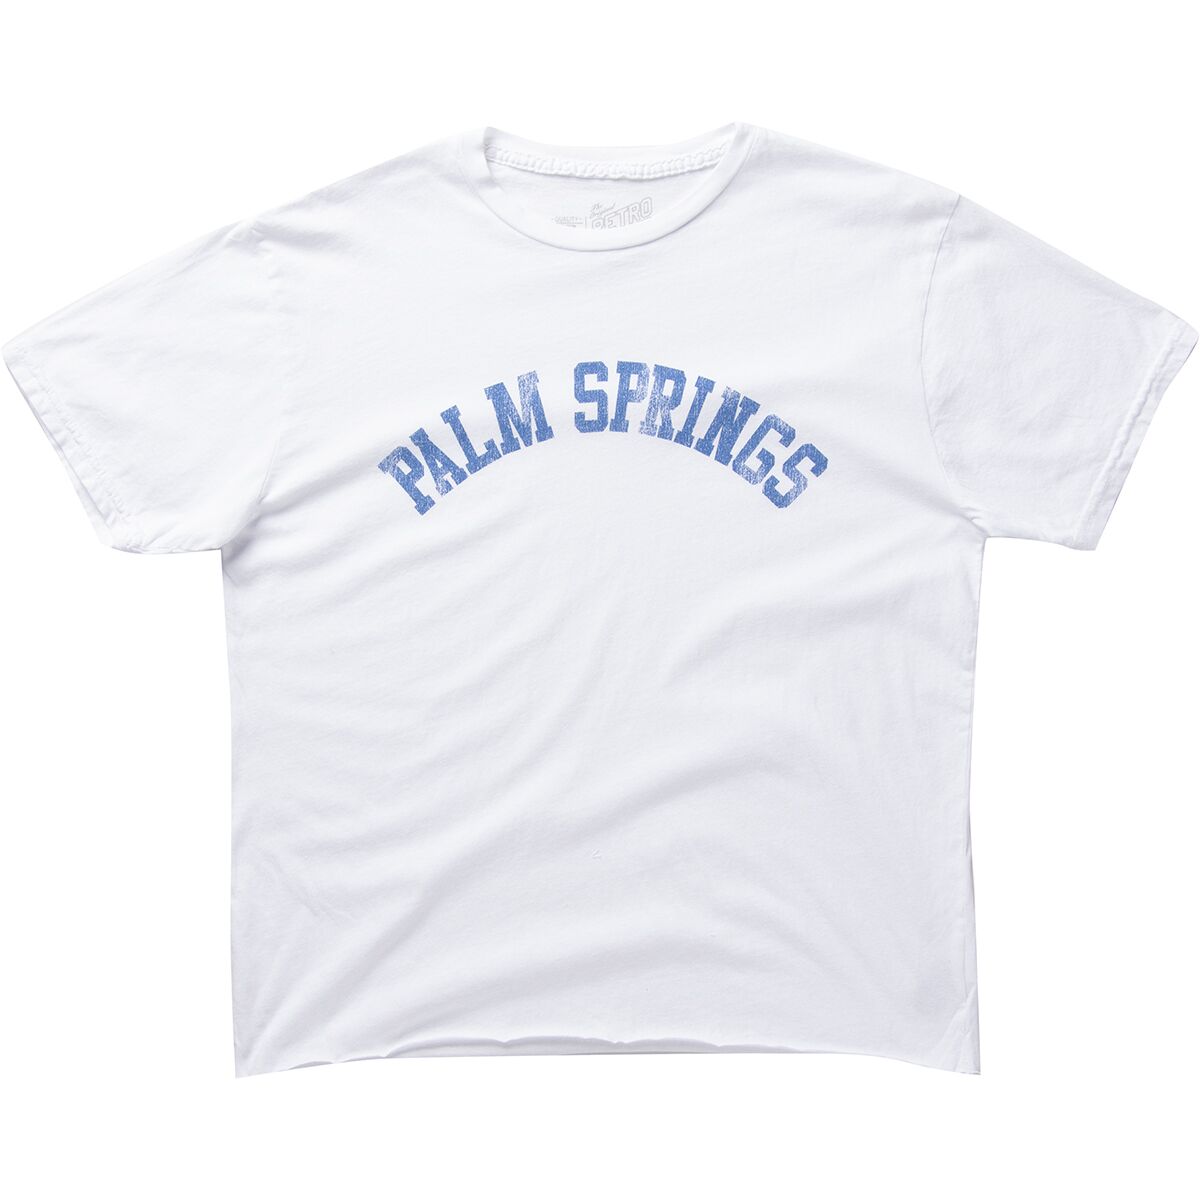 Original Retro Brand Palm Springs Shirt - Women's